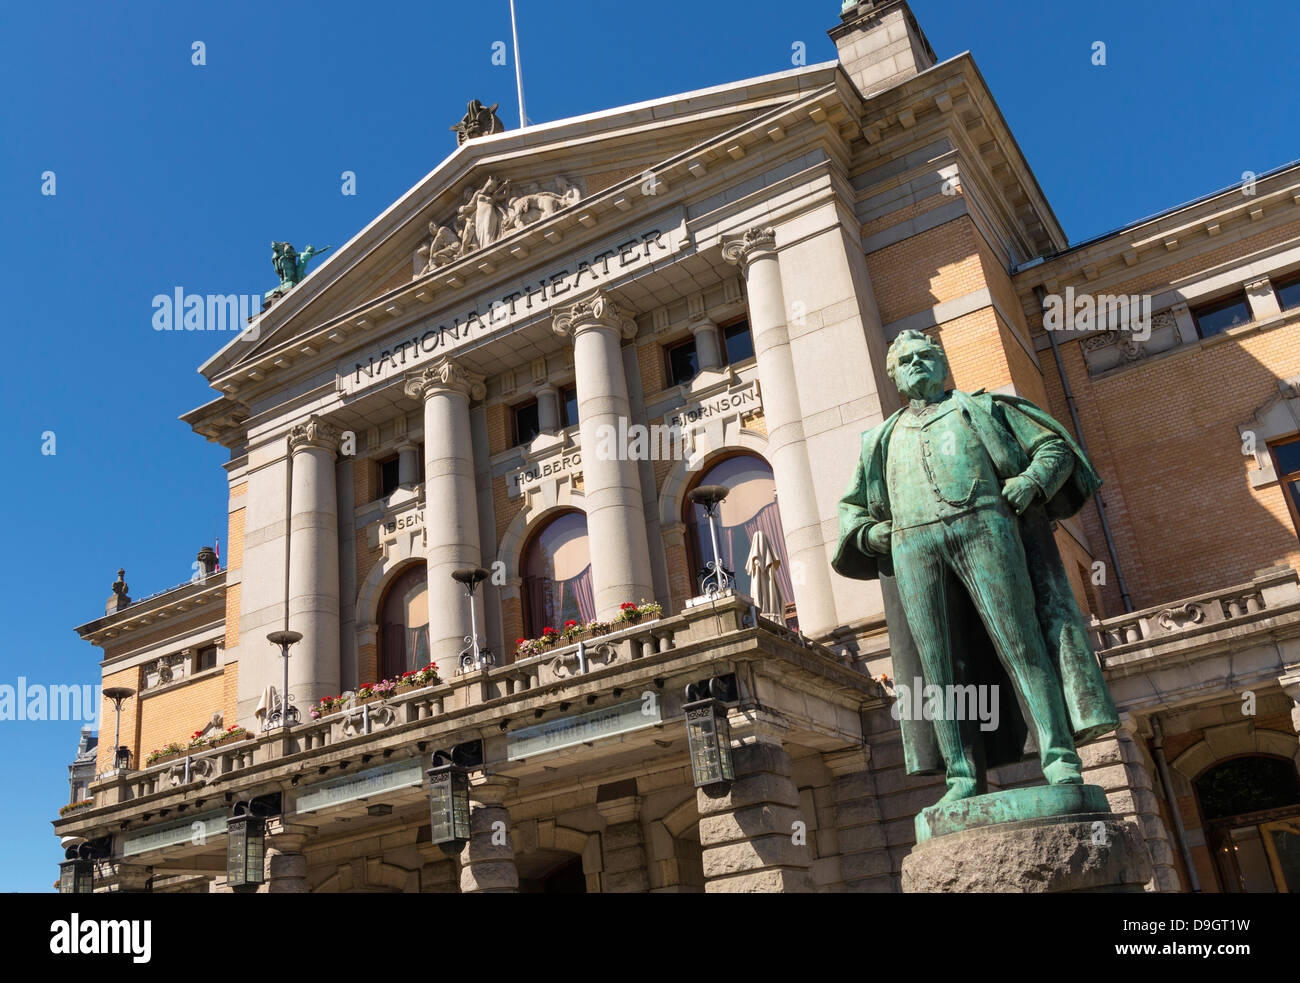 El Teatro Nacional de Noruega, en Oslo, Noruega, con la estatua del escritor Bjornstjerne Bjornson Foto de stock